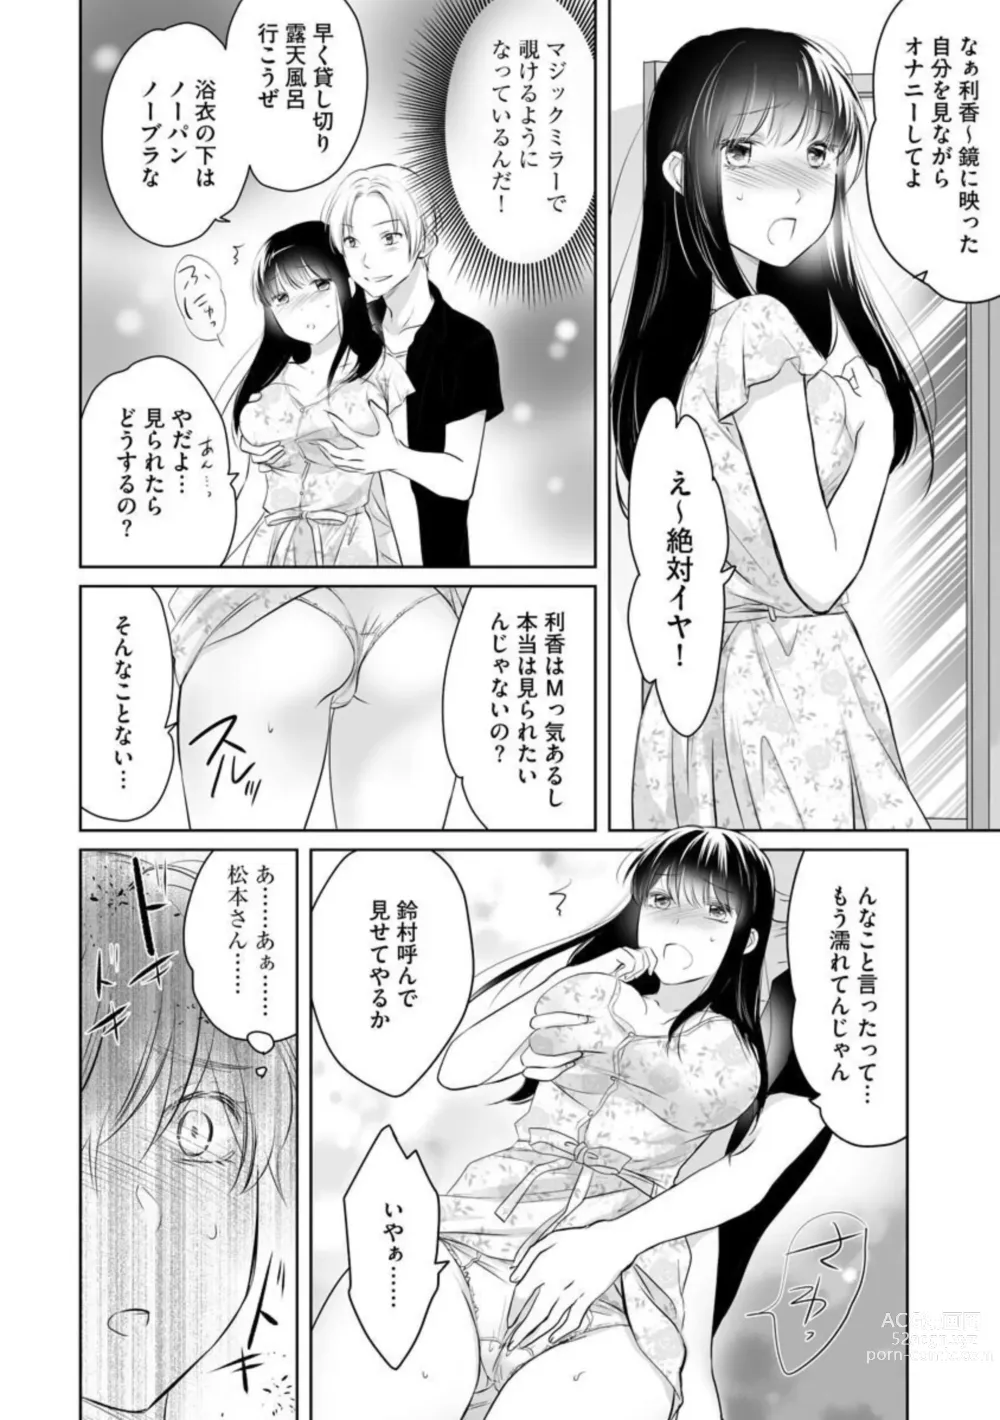 Page 38 of manga Nozoki ana oba to Boku no Himitsu no Natsuyasumi 1-2